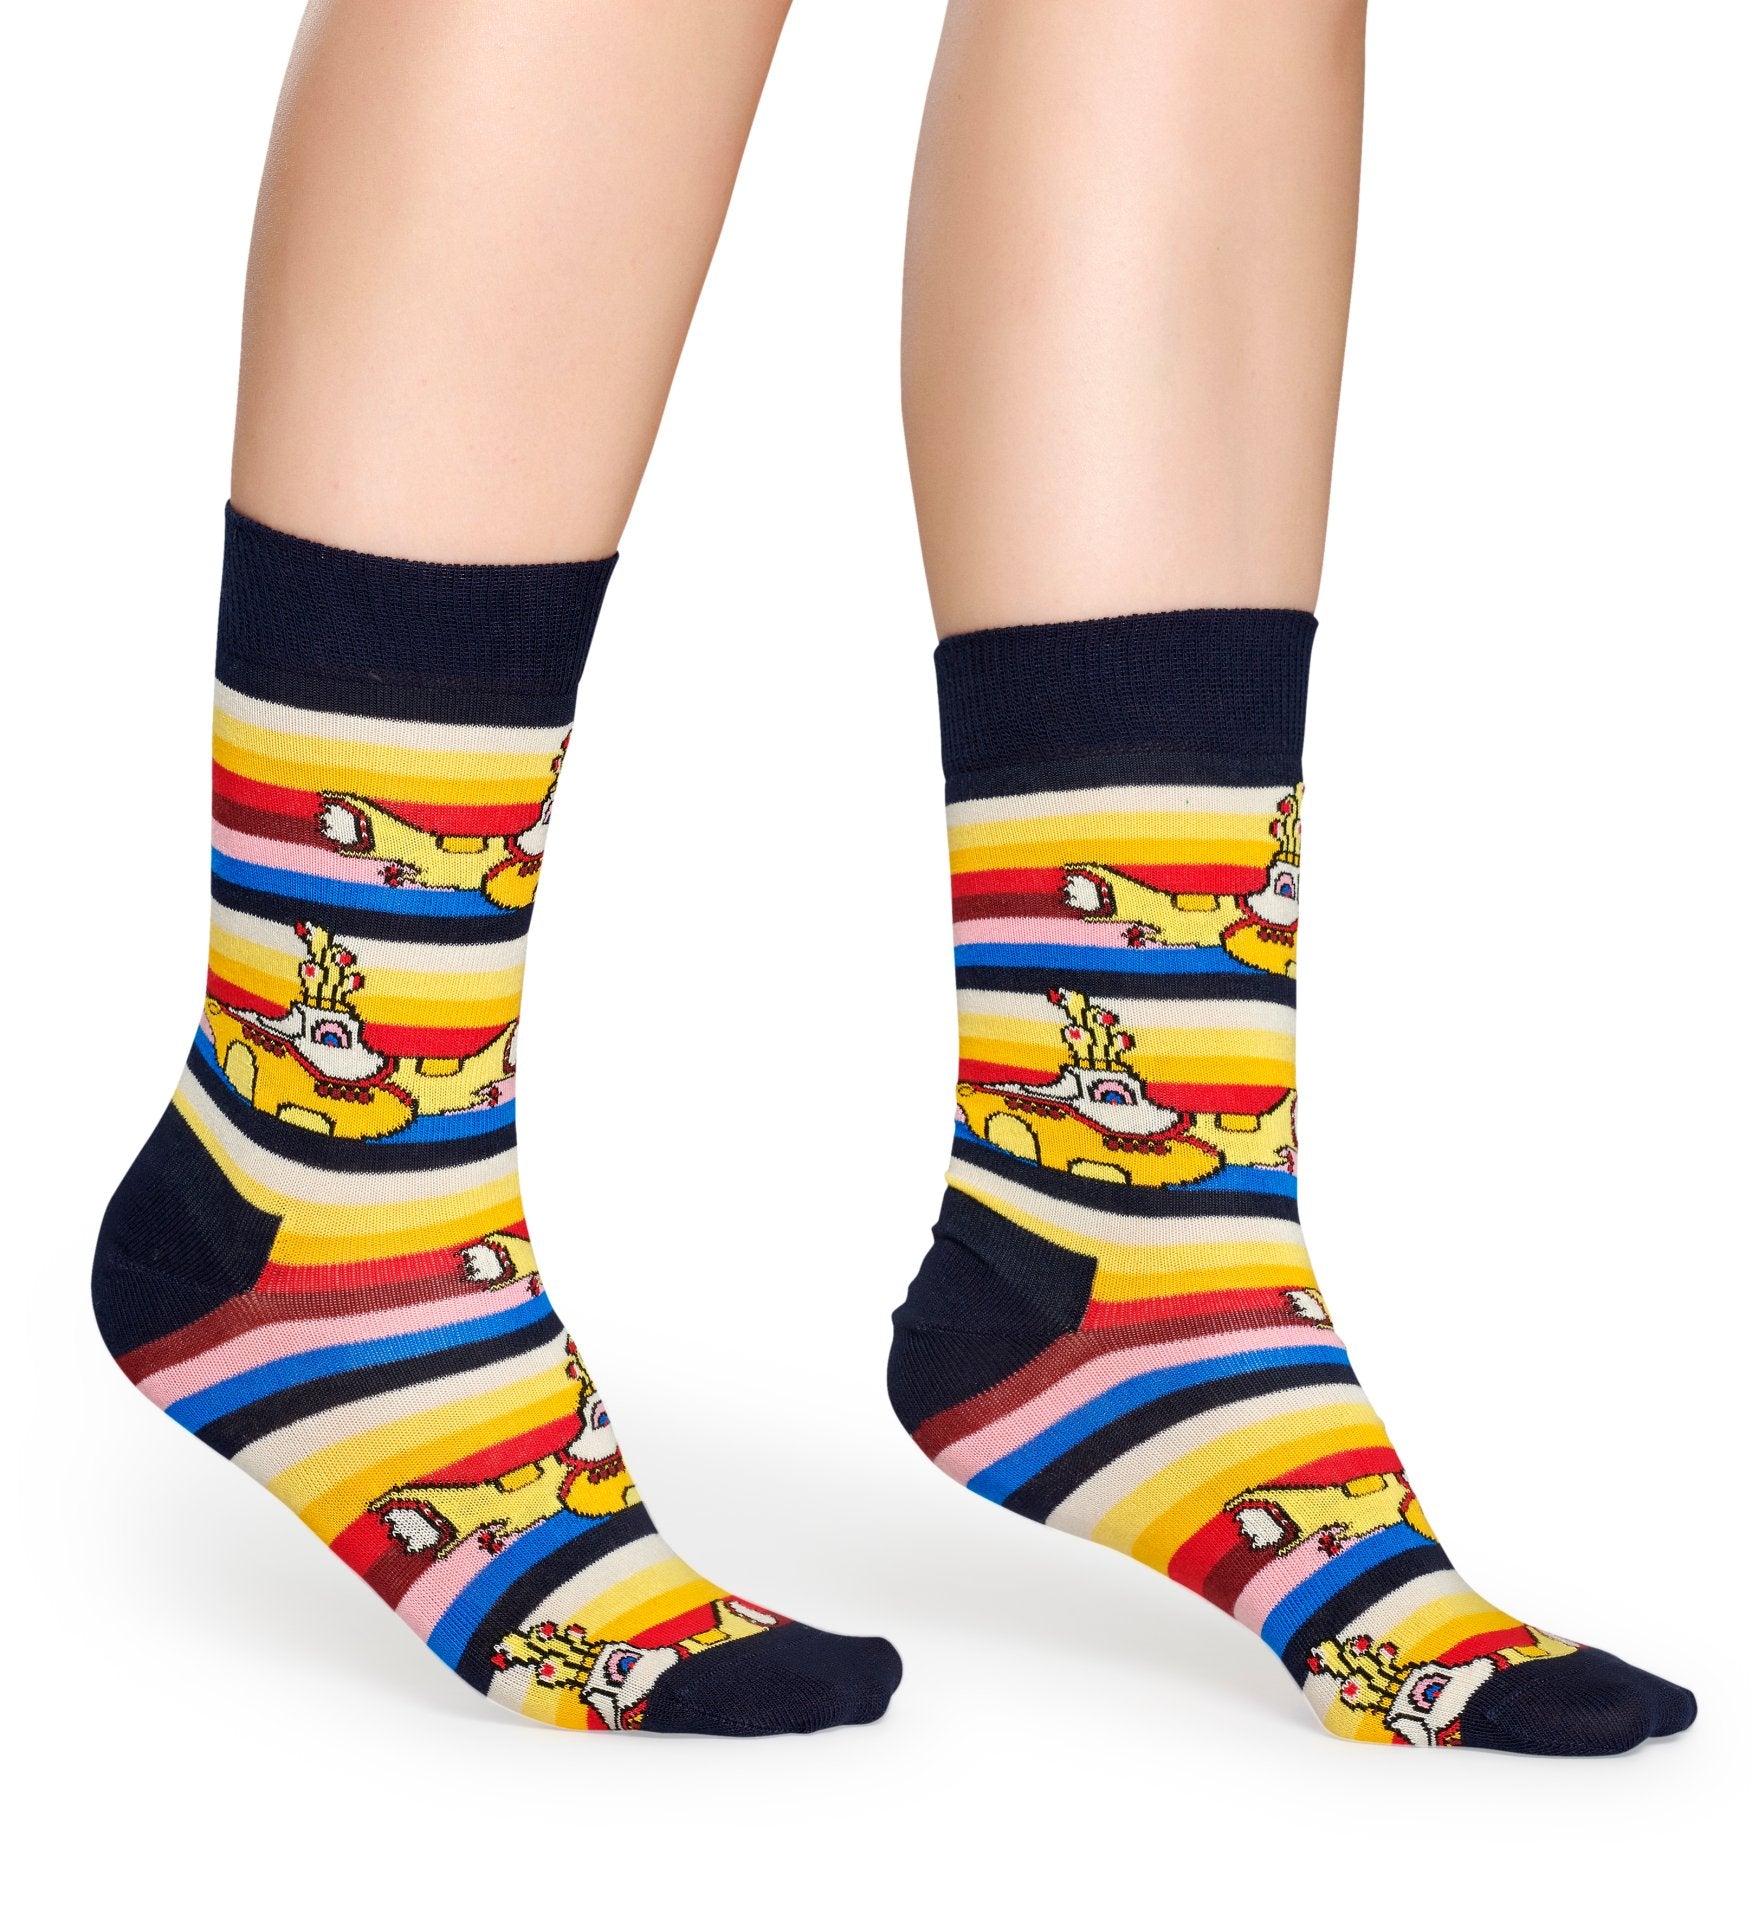 Žluto-černé pruhované ponožky s ponorkami z kolekce Happy Socks x Beatles, vzor All On Board